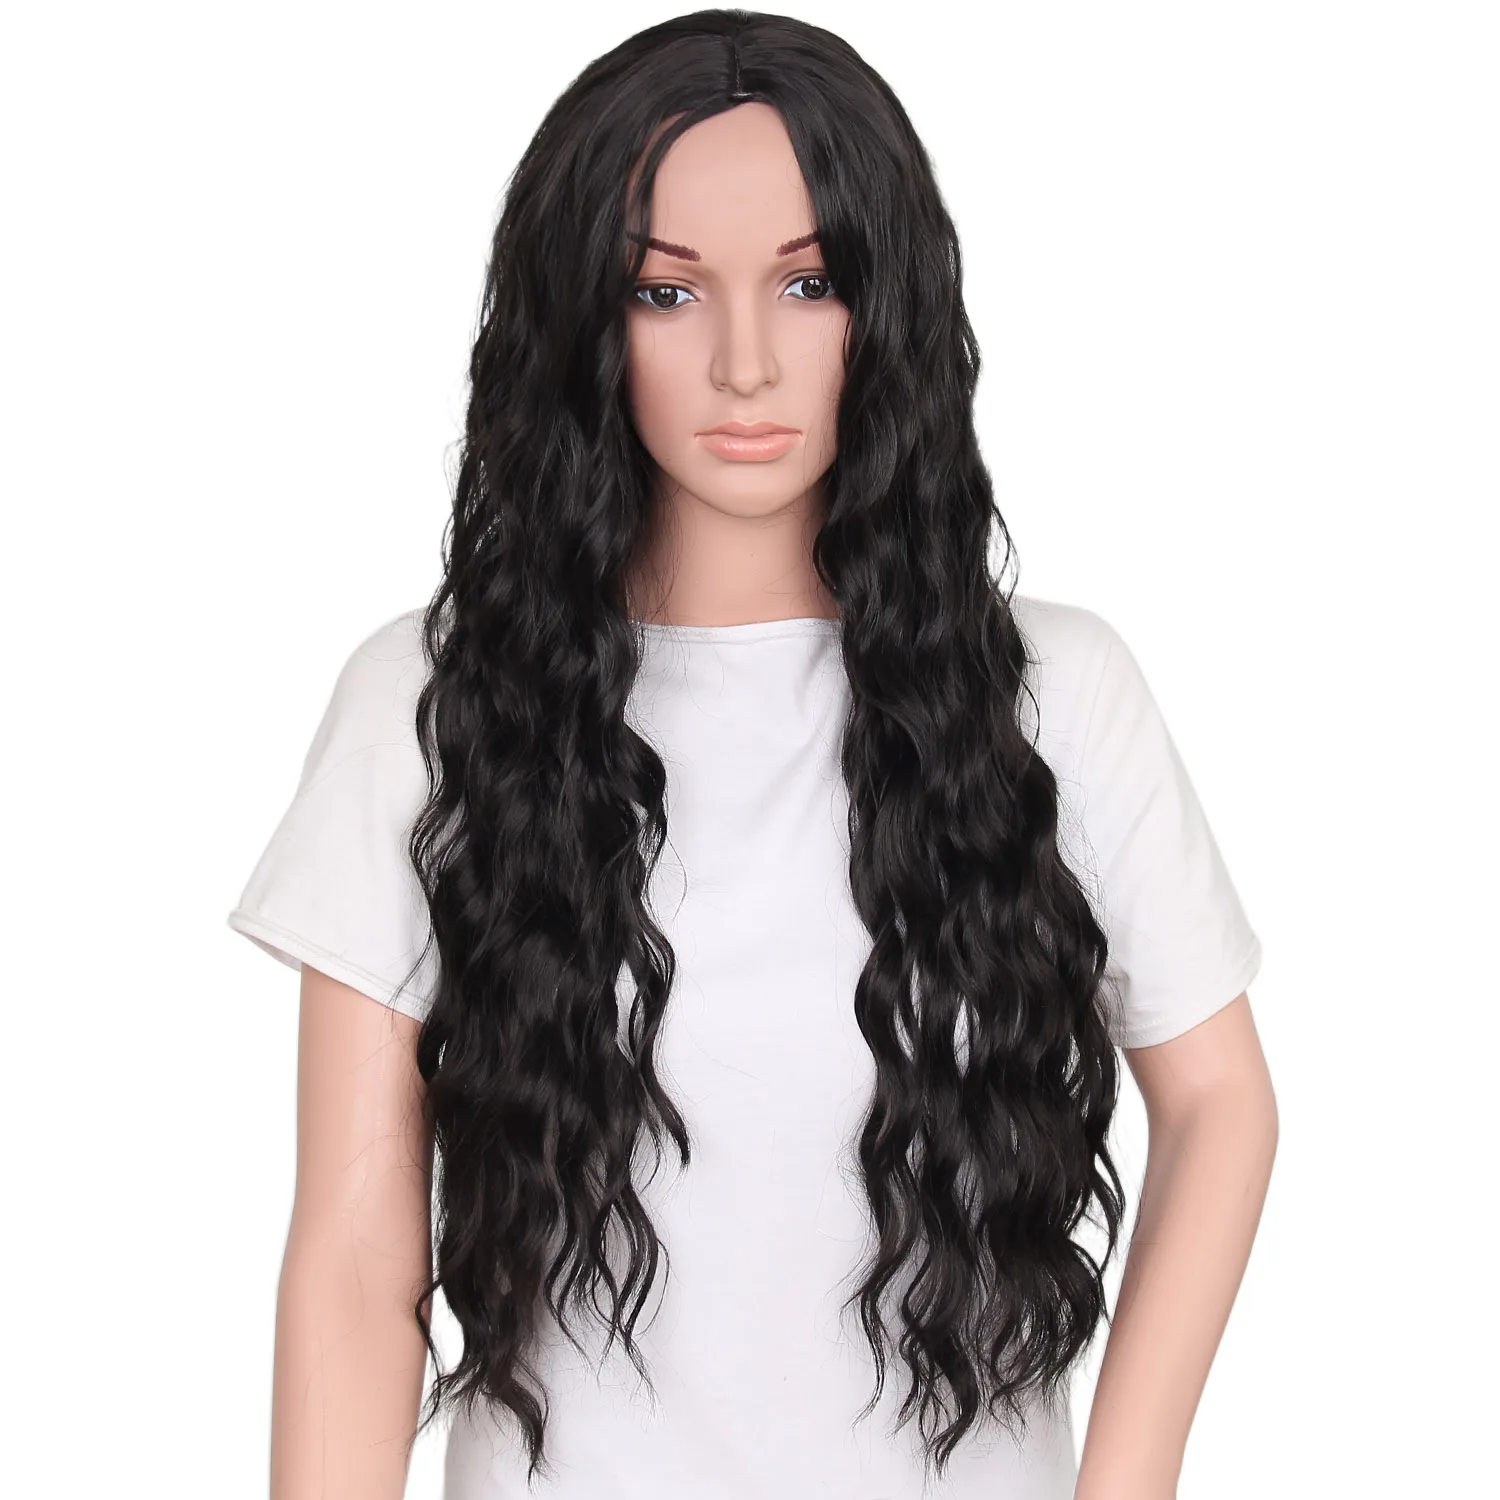 YxCheris яки вьющиеся парики для женщин Омбре светлые волосы парик тепла Reisistant волокна синтетический длинный парик косплей